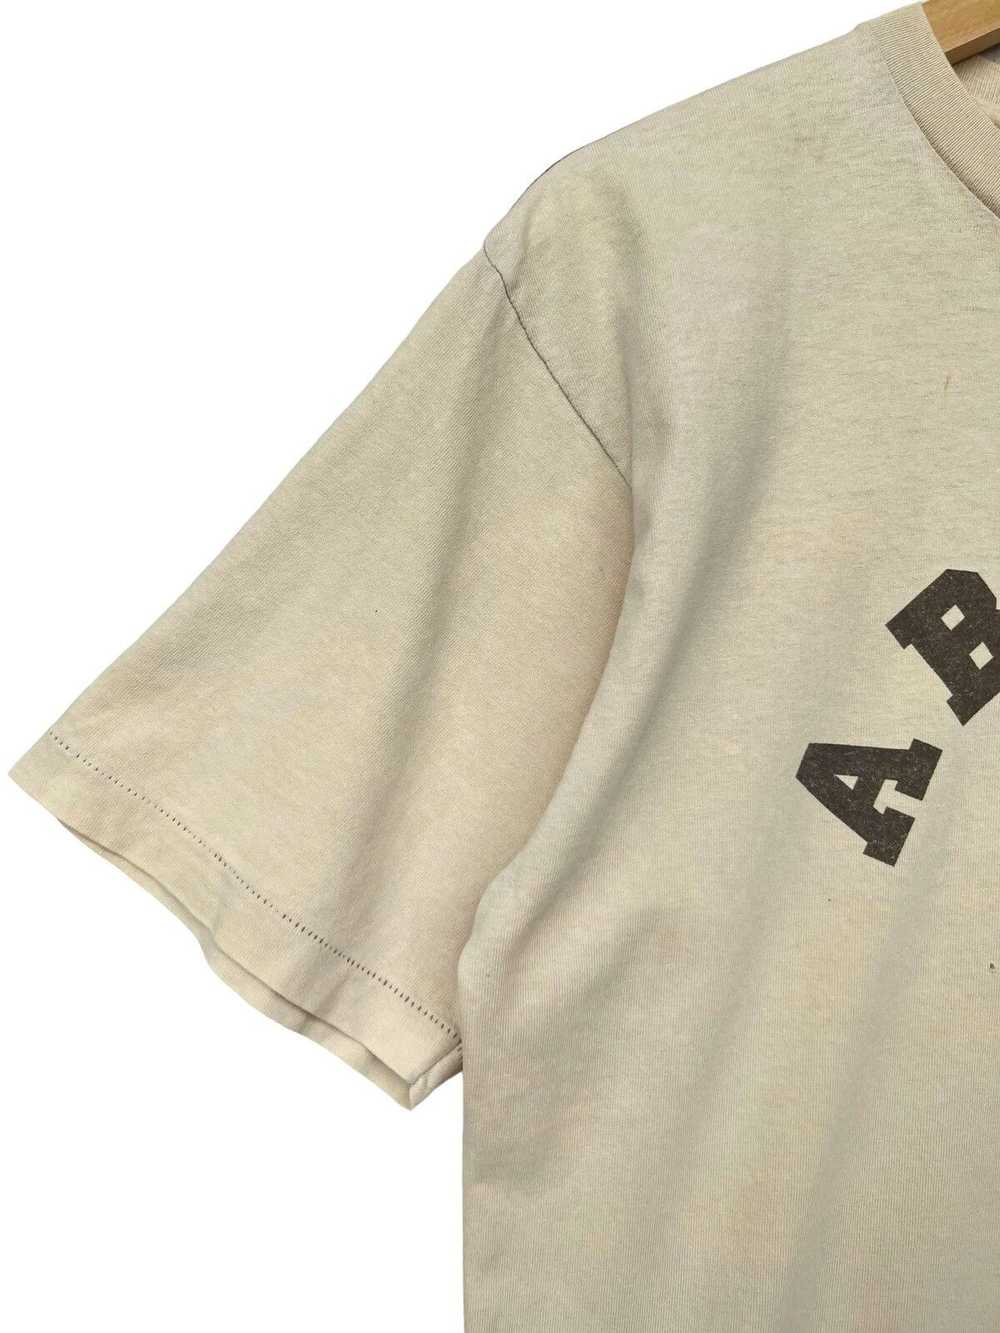 Bape × Streetwear × Vintage Oneita College Tee - image 7